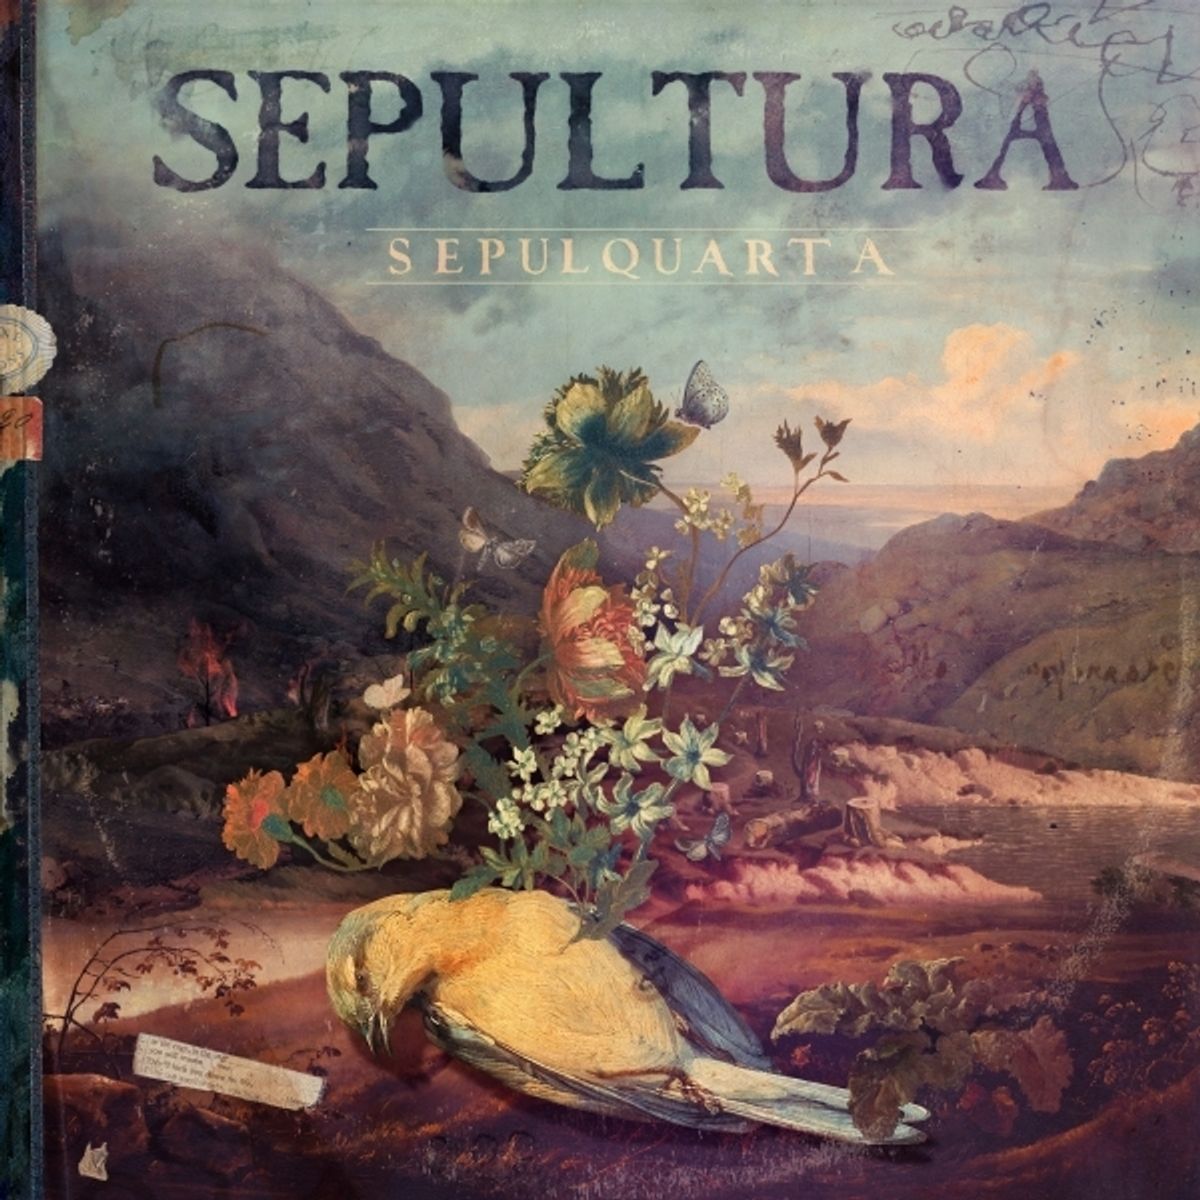 SEPULTURA - SepulQuarta cover 